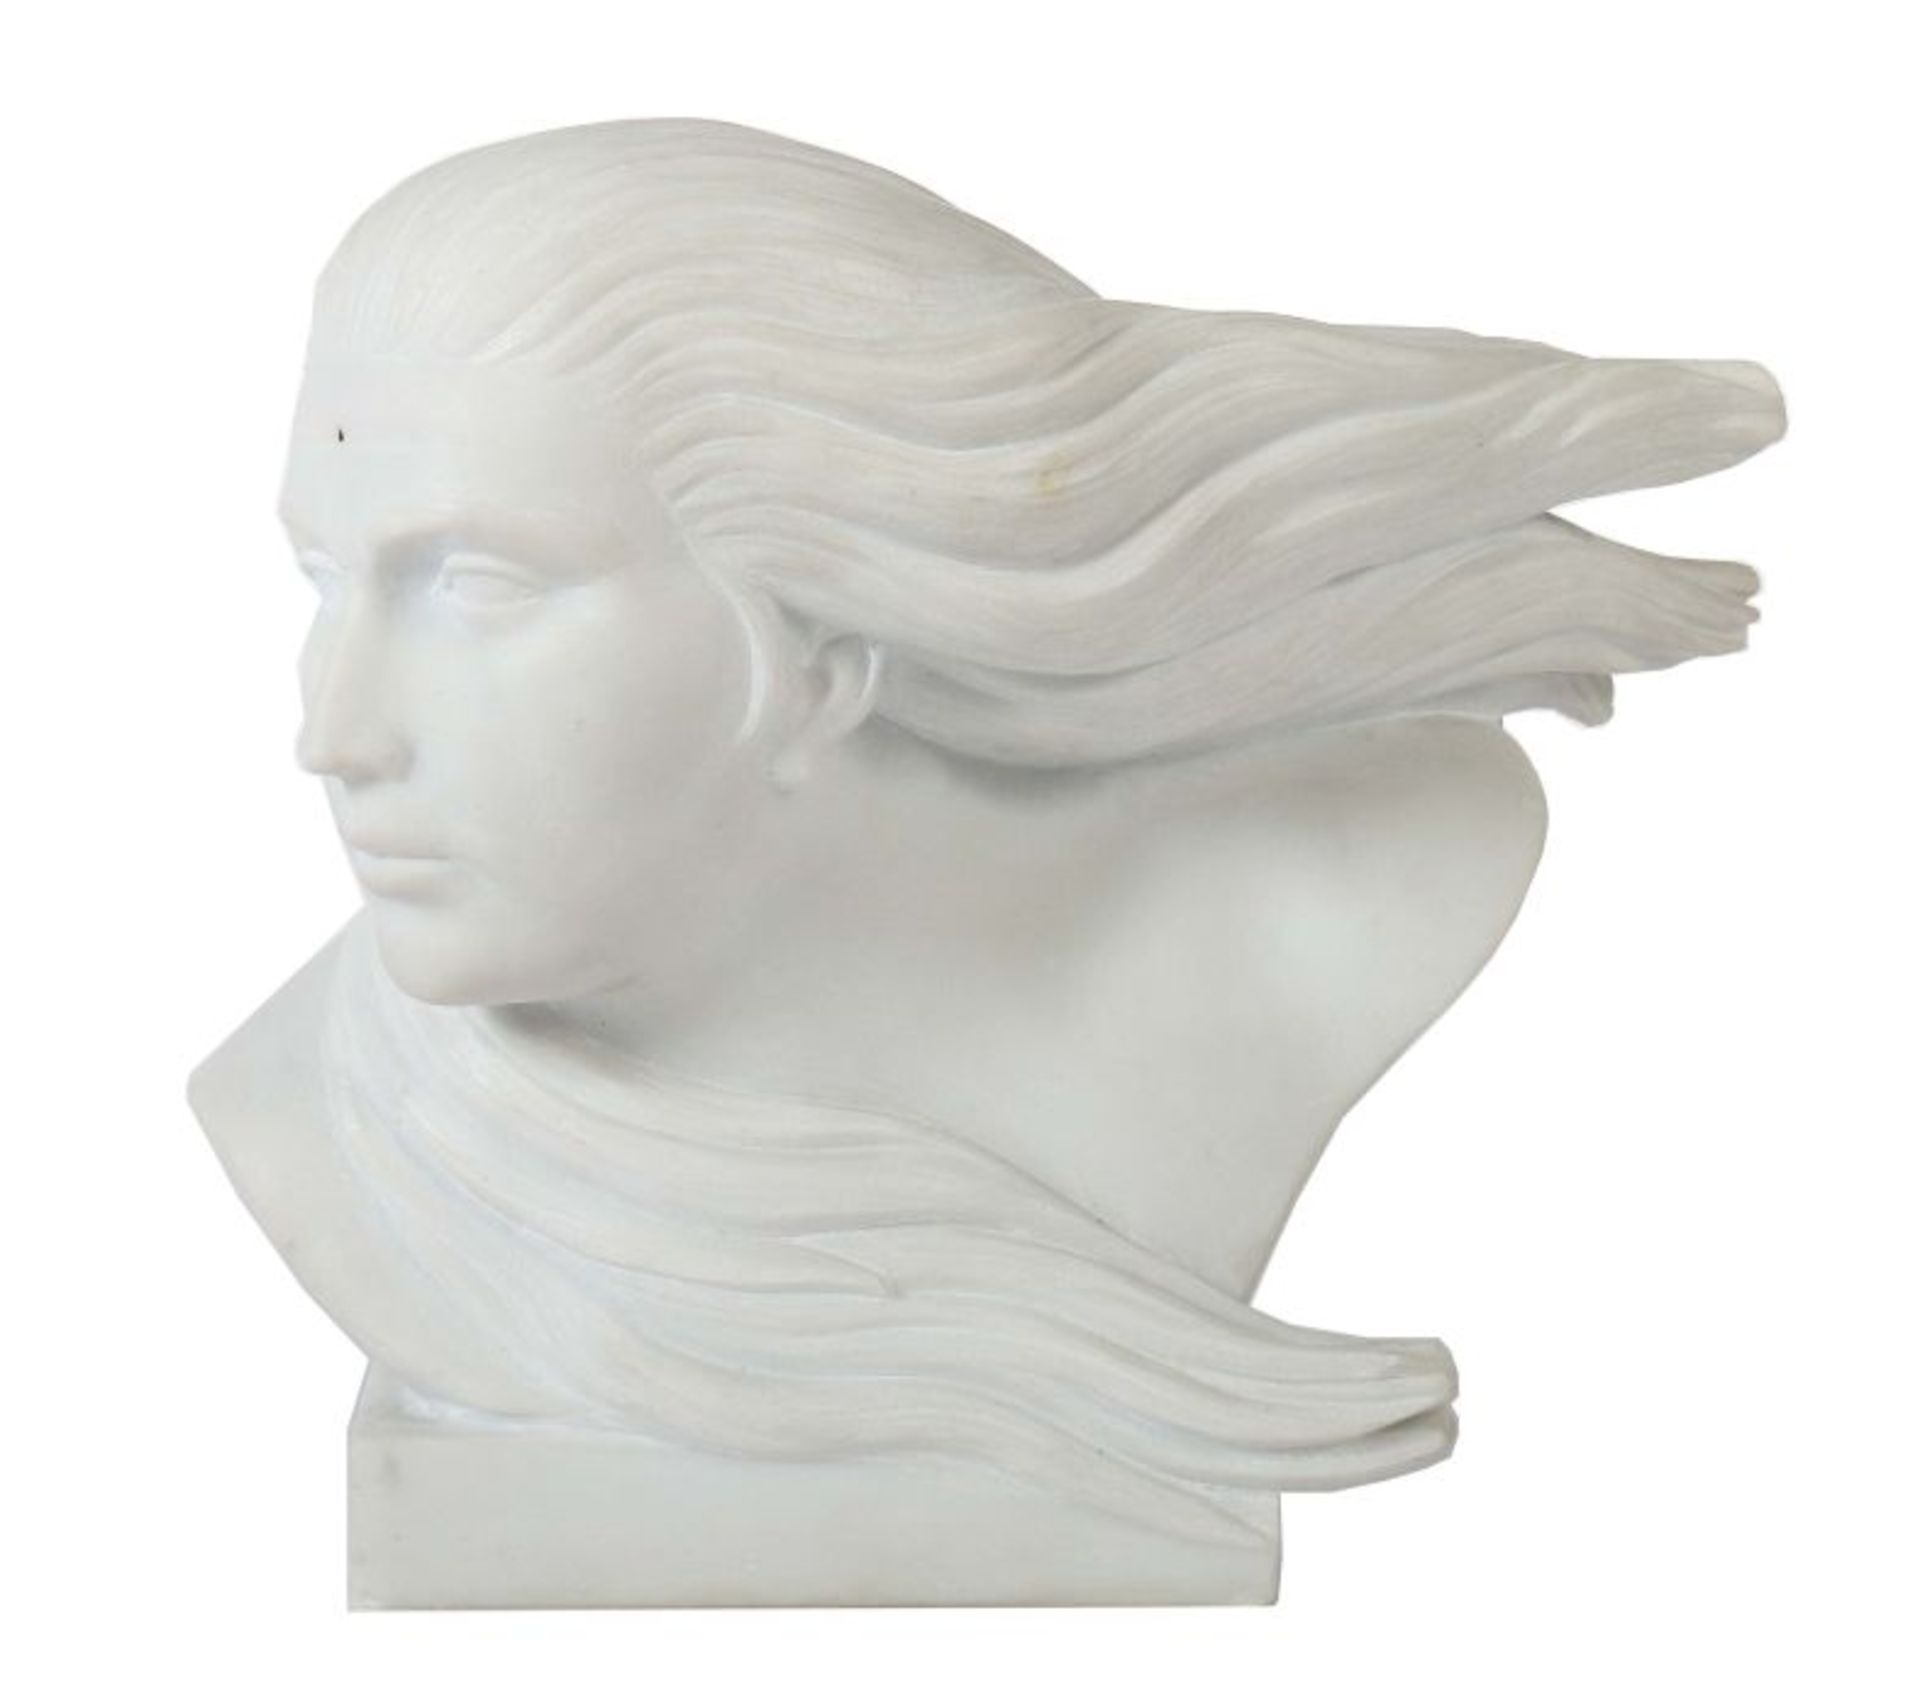 Bildhauer des 20. Jh. Frauenkopf, Carrara- Marmor, vollplastische, naturalistische Büste einer